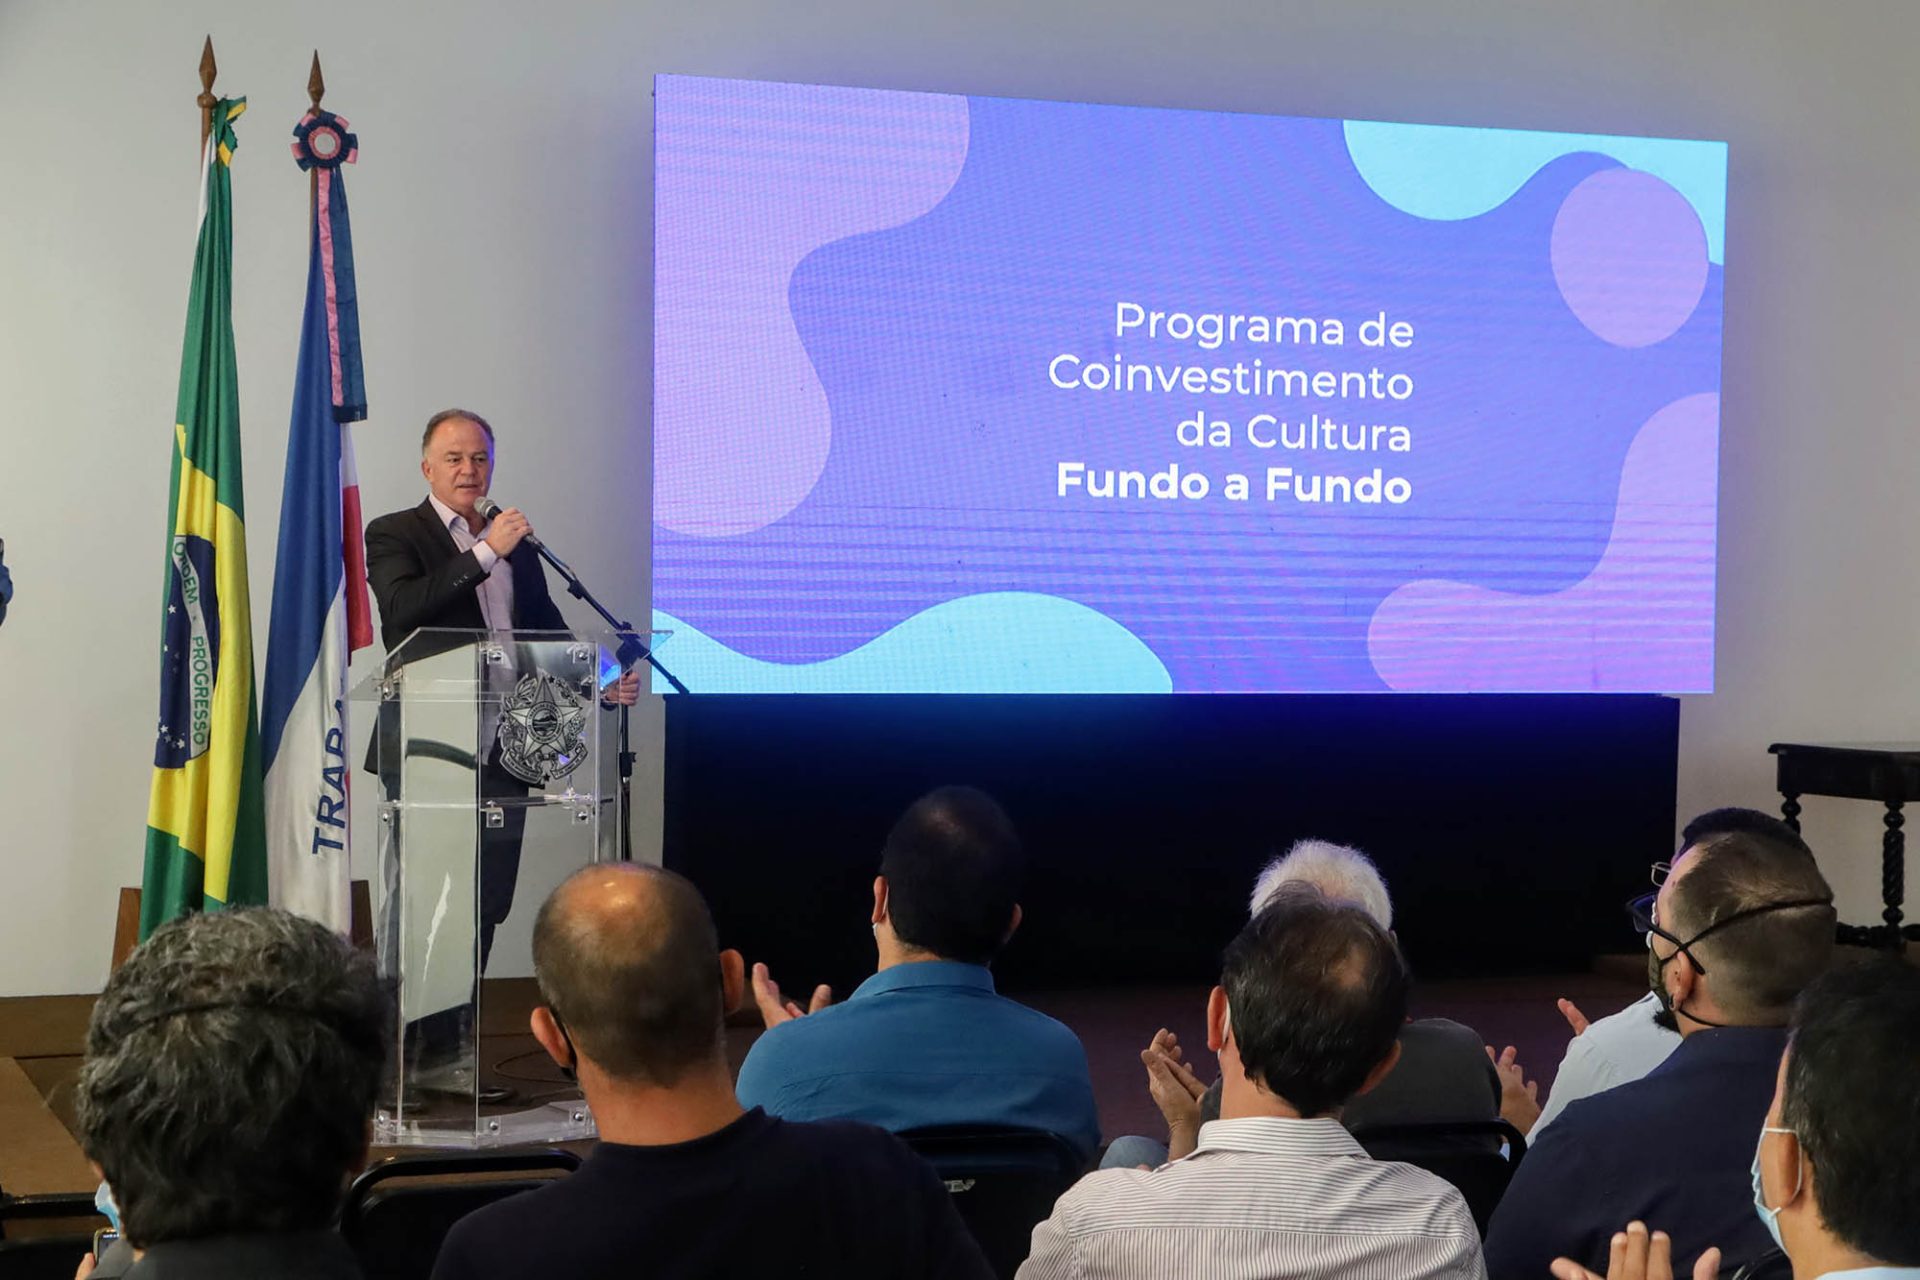 Estado anuncia municípios habilitados para Programa de Coinvestimento da Cultura – Fundo a Fundo